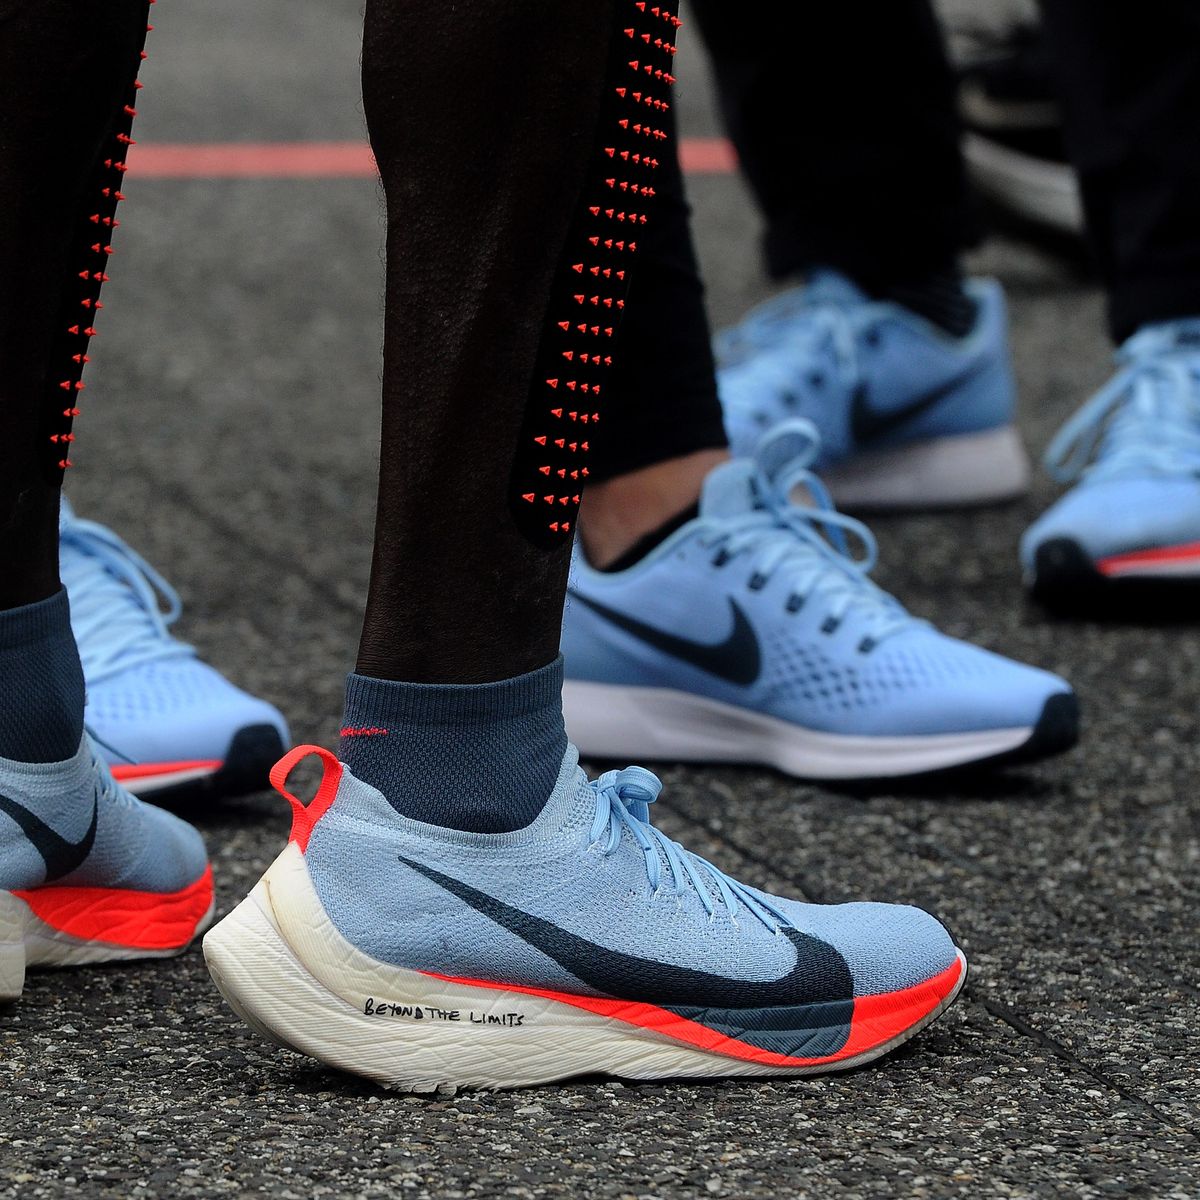 sobre el impacto de las Vaporfly de Nike en maratón